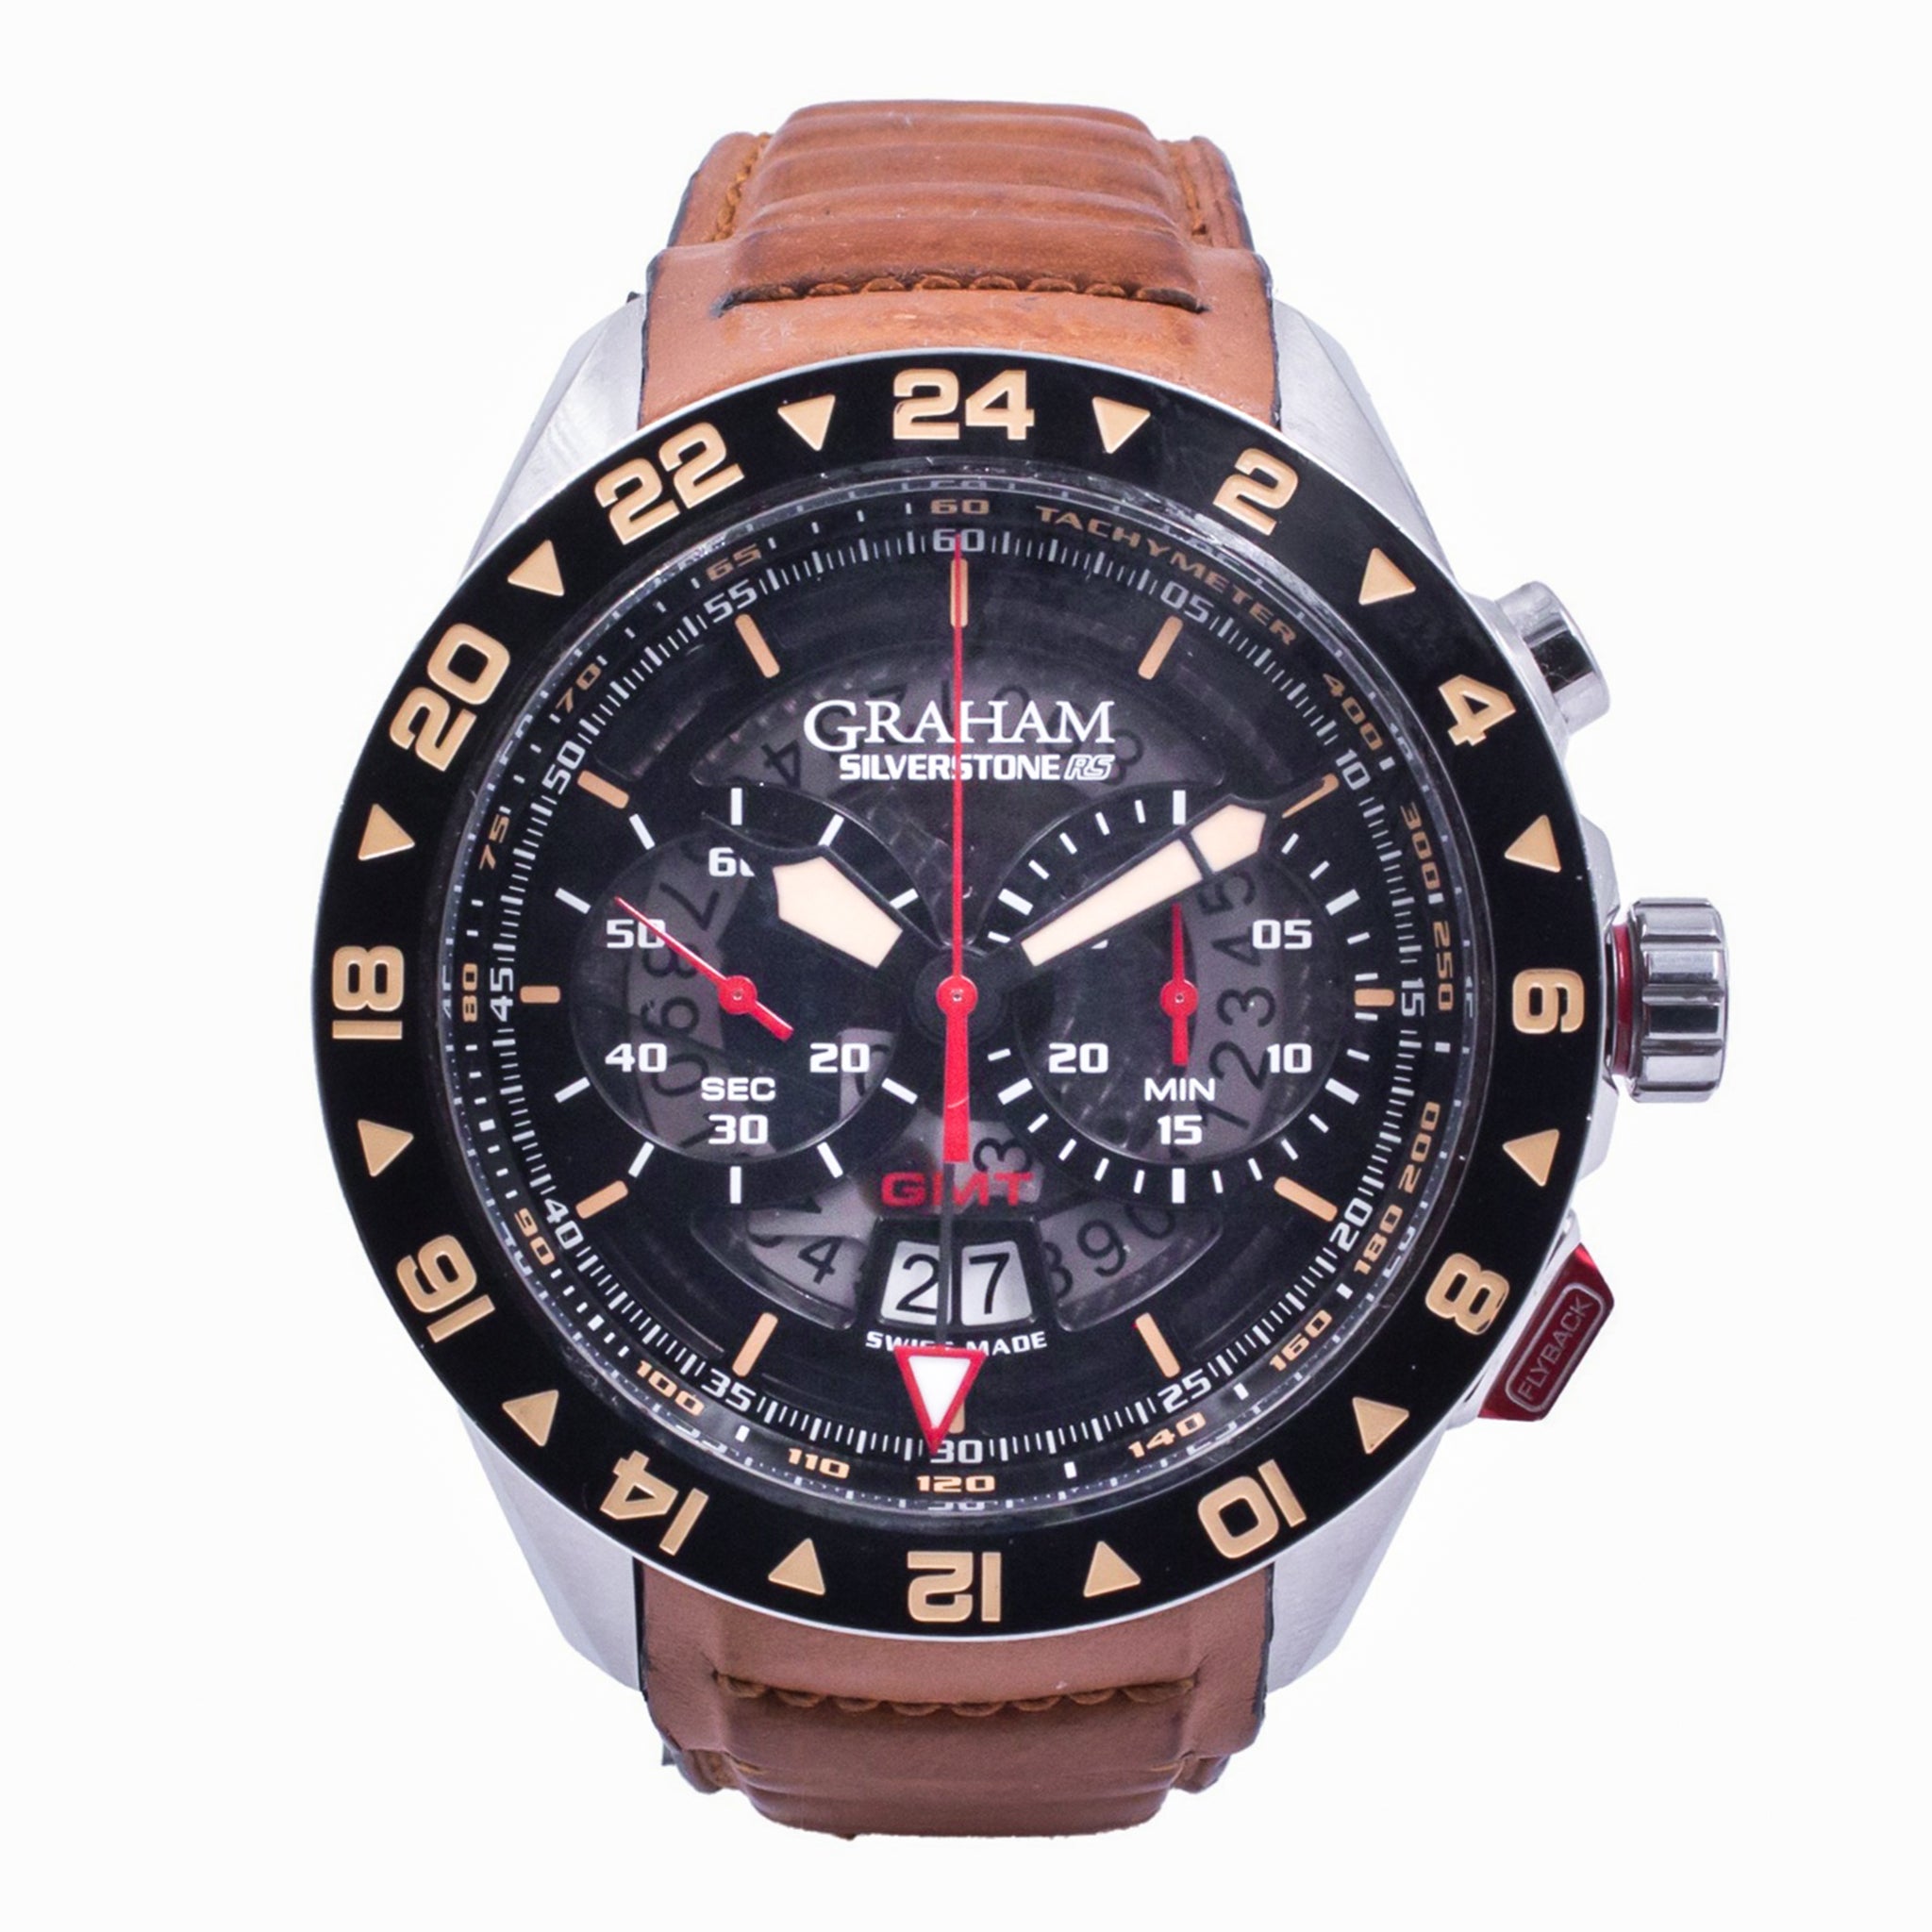 Reloj Graham Silverstone RS GMT para Caballero (seminuevo)